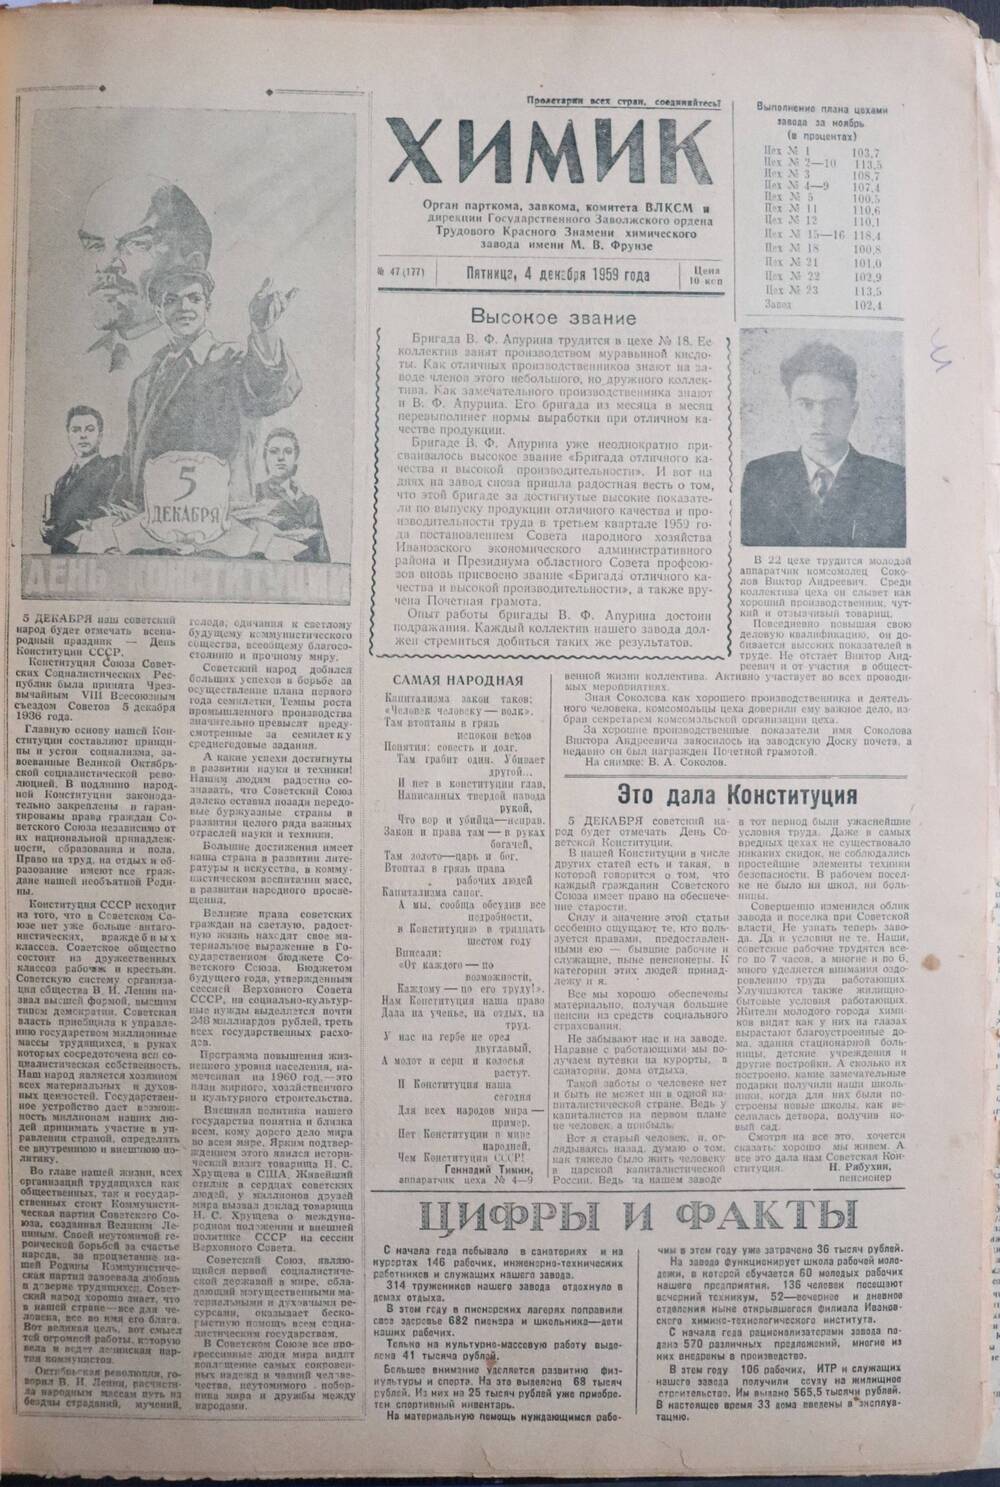 Газета «Химик» № 47 от 4 декабря 1959 года.